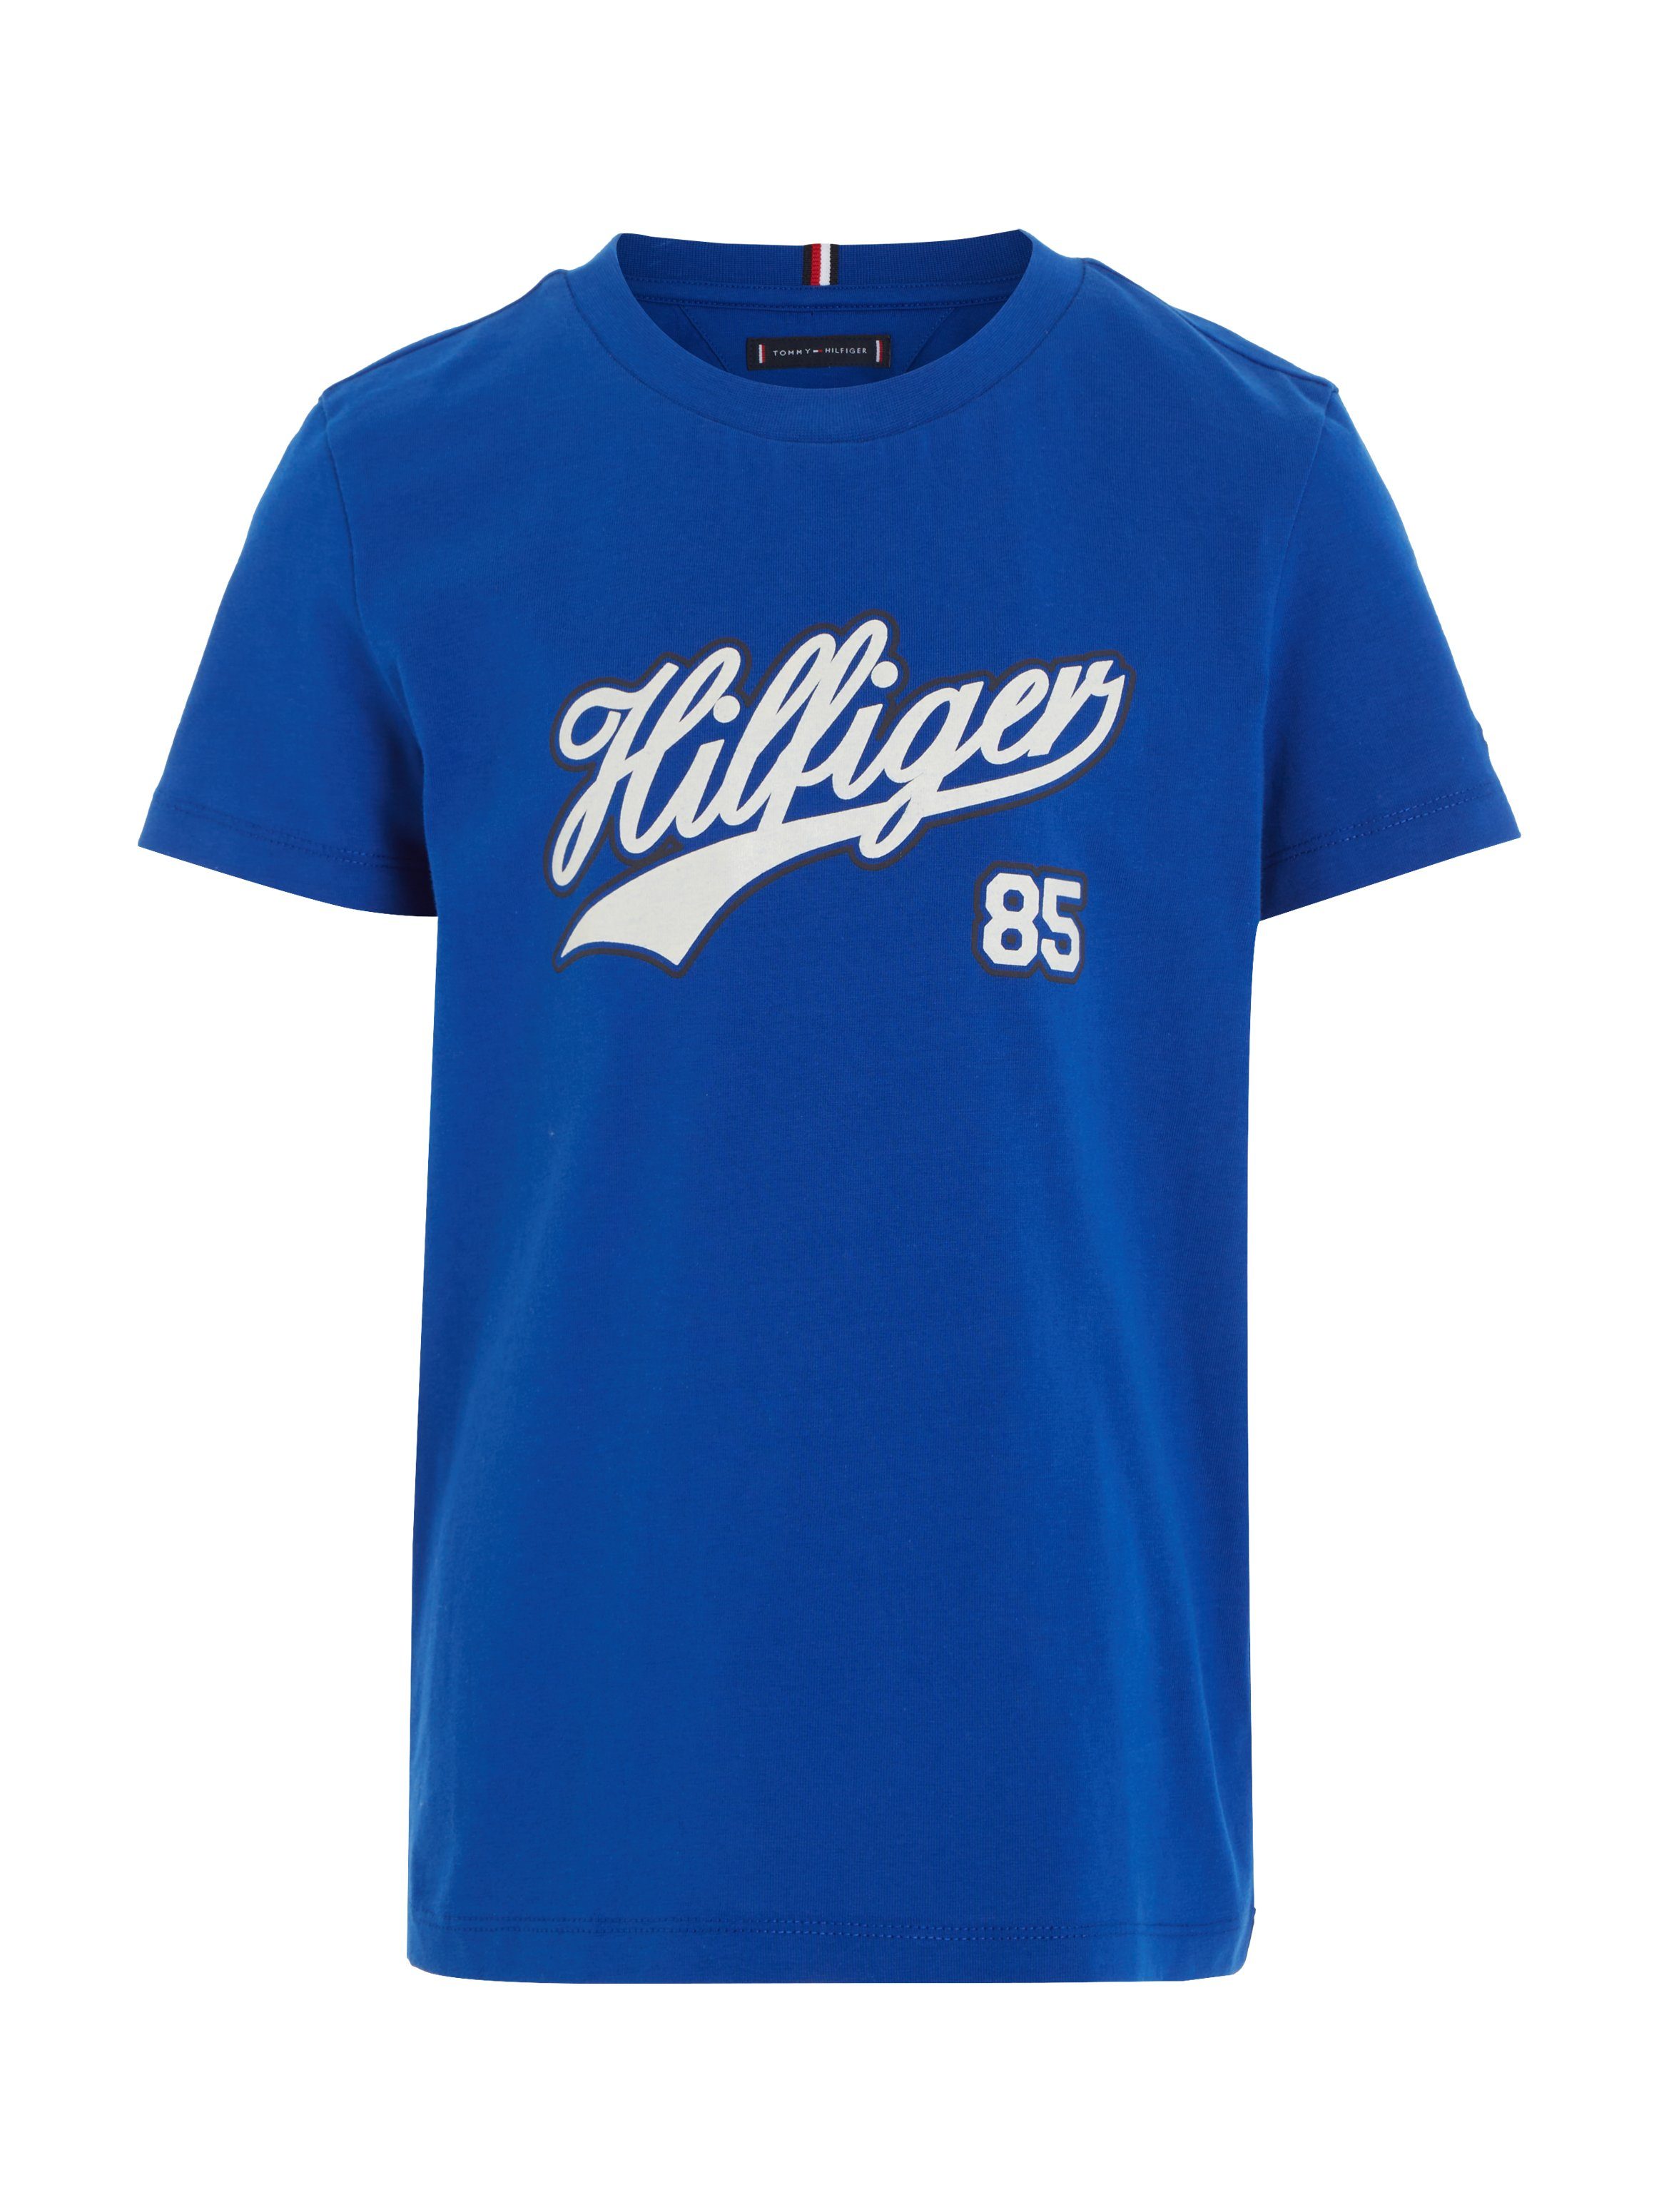 Tommy Hilfiger T-Shirt HILFIGER SCRIPT TEE blue S/S Logoschriftzug mit ultra großem